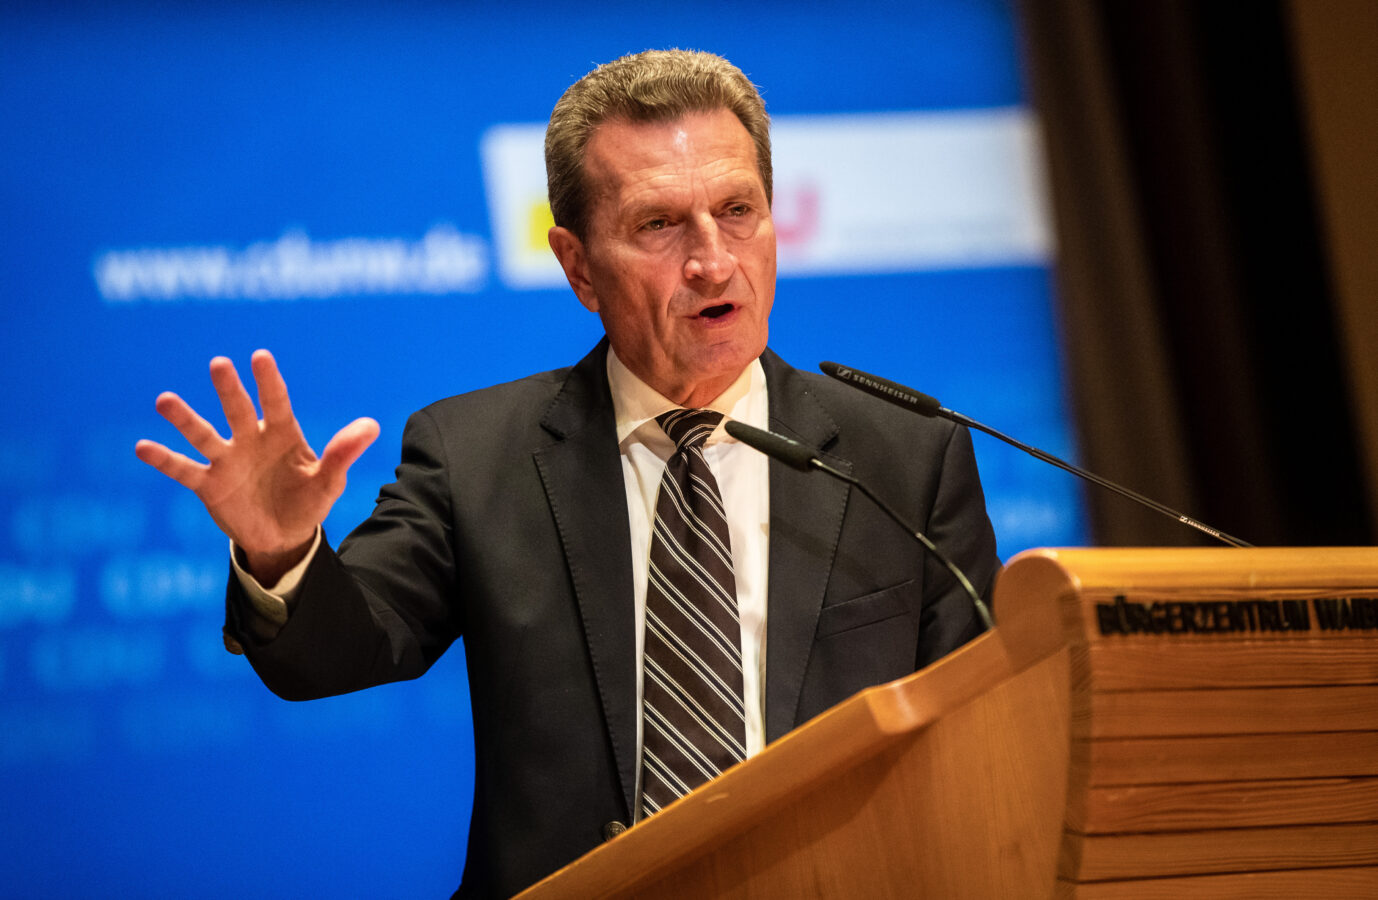 Günther Oettinger (CDU) sieht düstere Zeiten auf Deutschland zukommen Foto:picture alliance/dpa | Christoph Schmidt